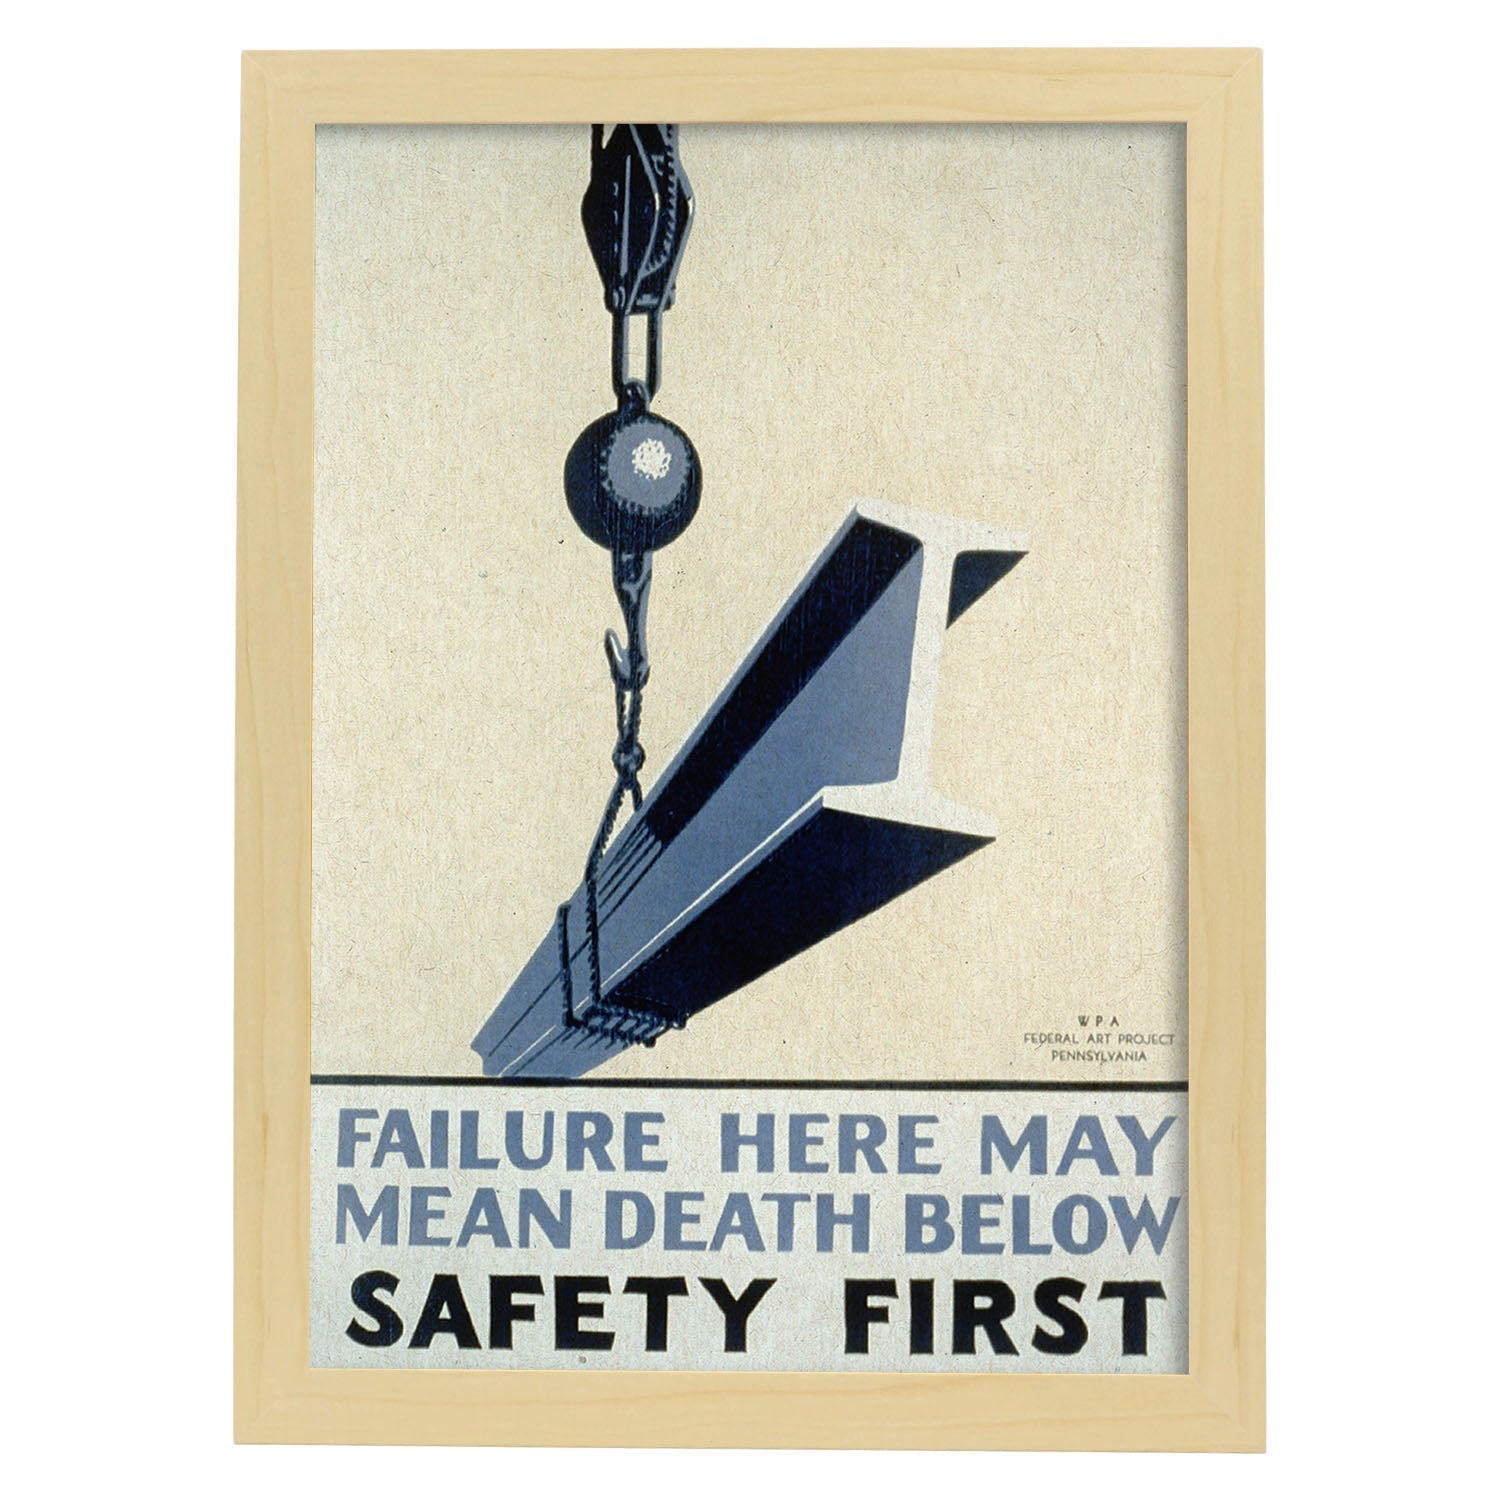 Poster vintage. Cartel vintage del departamento federal de Pennsylvania "Safety first".-Artwork-Nacnic-A3-Marco Madera clara-Nacnic Estudio SL